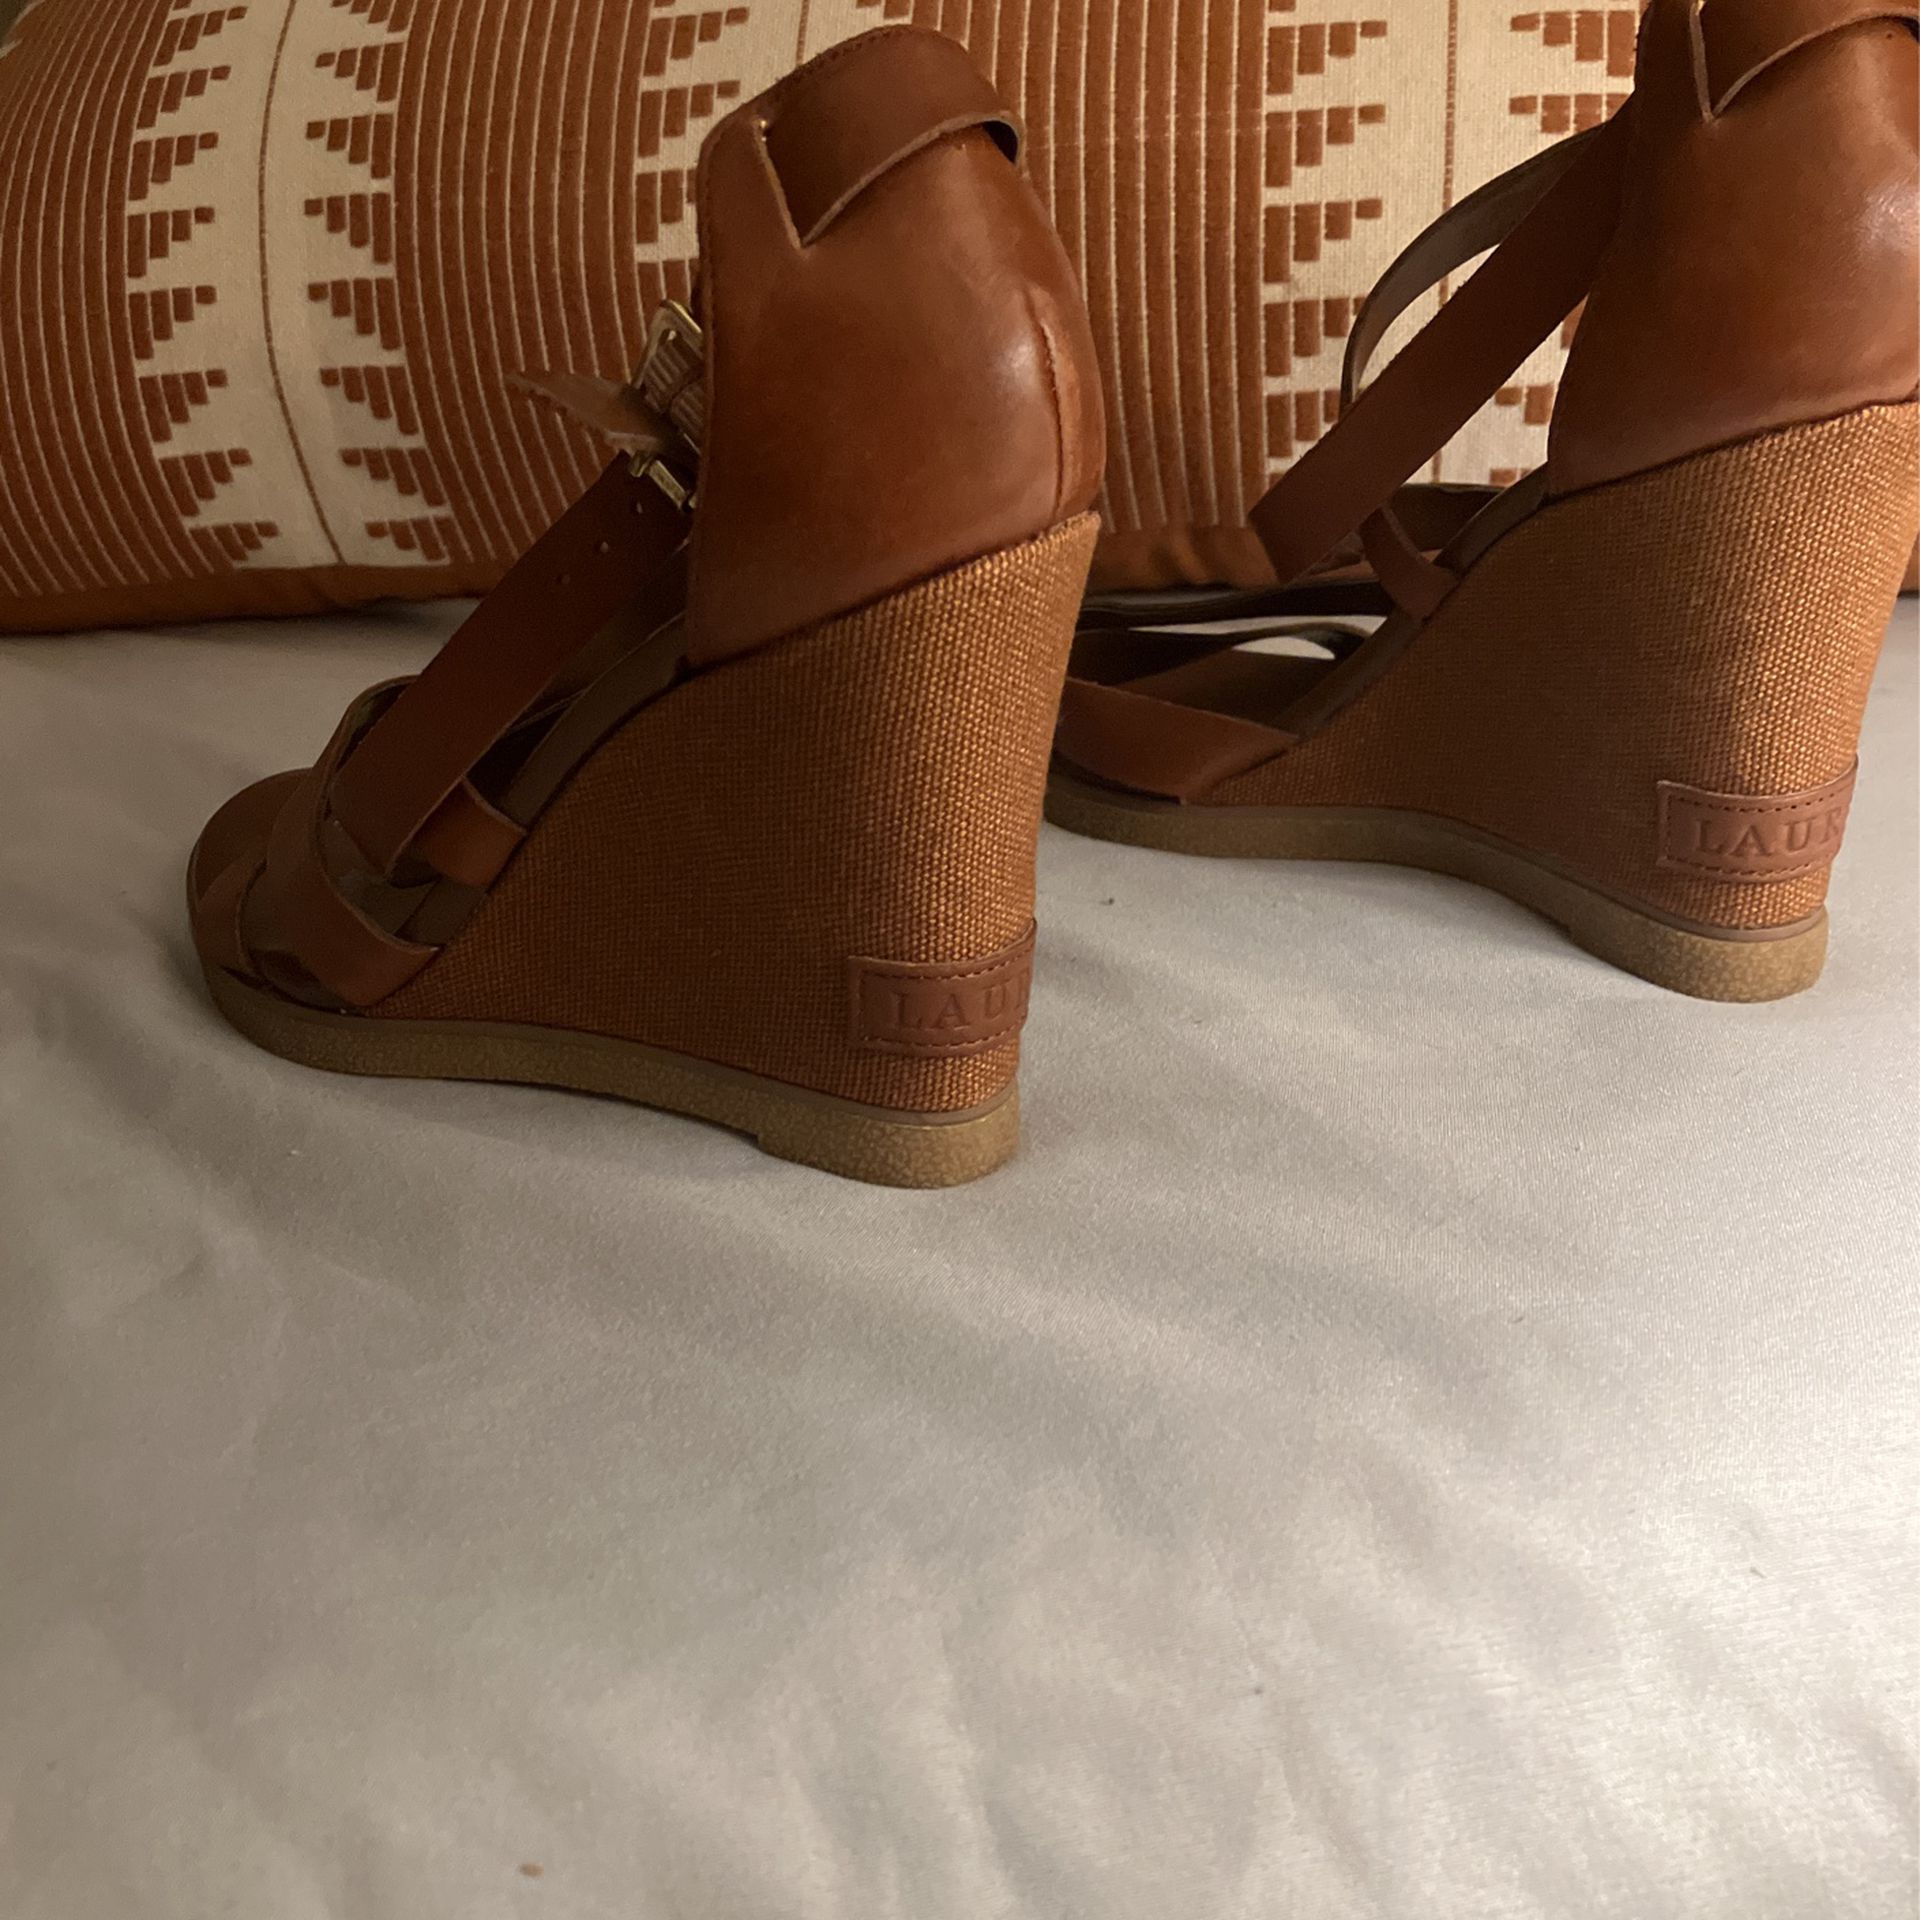 Ralph Lauren Wedge Sandal Heels for Sale in Tucson, AZ - OfferUp